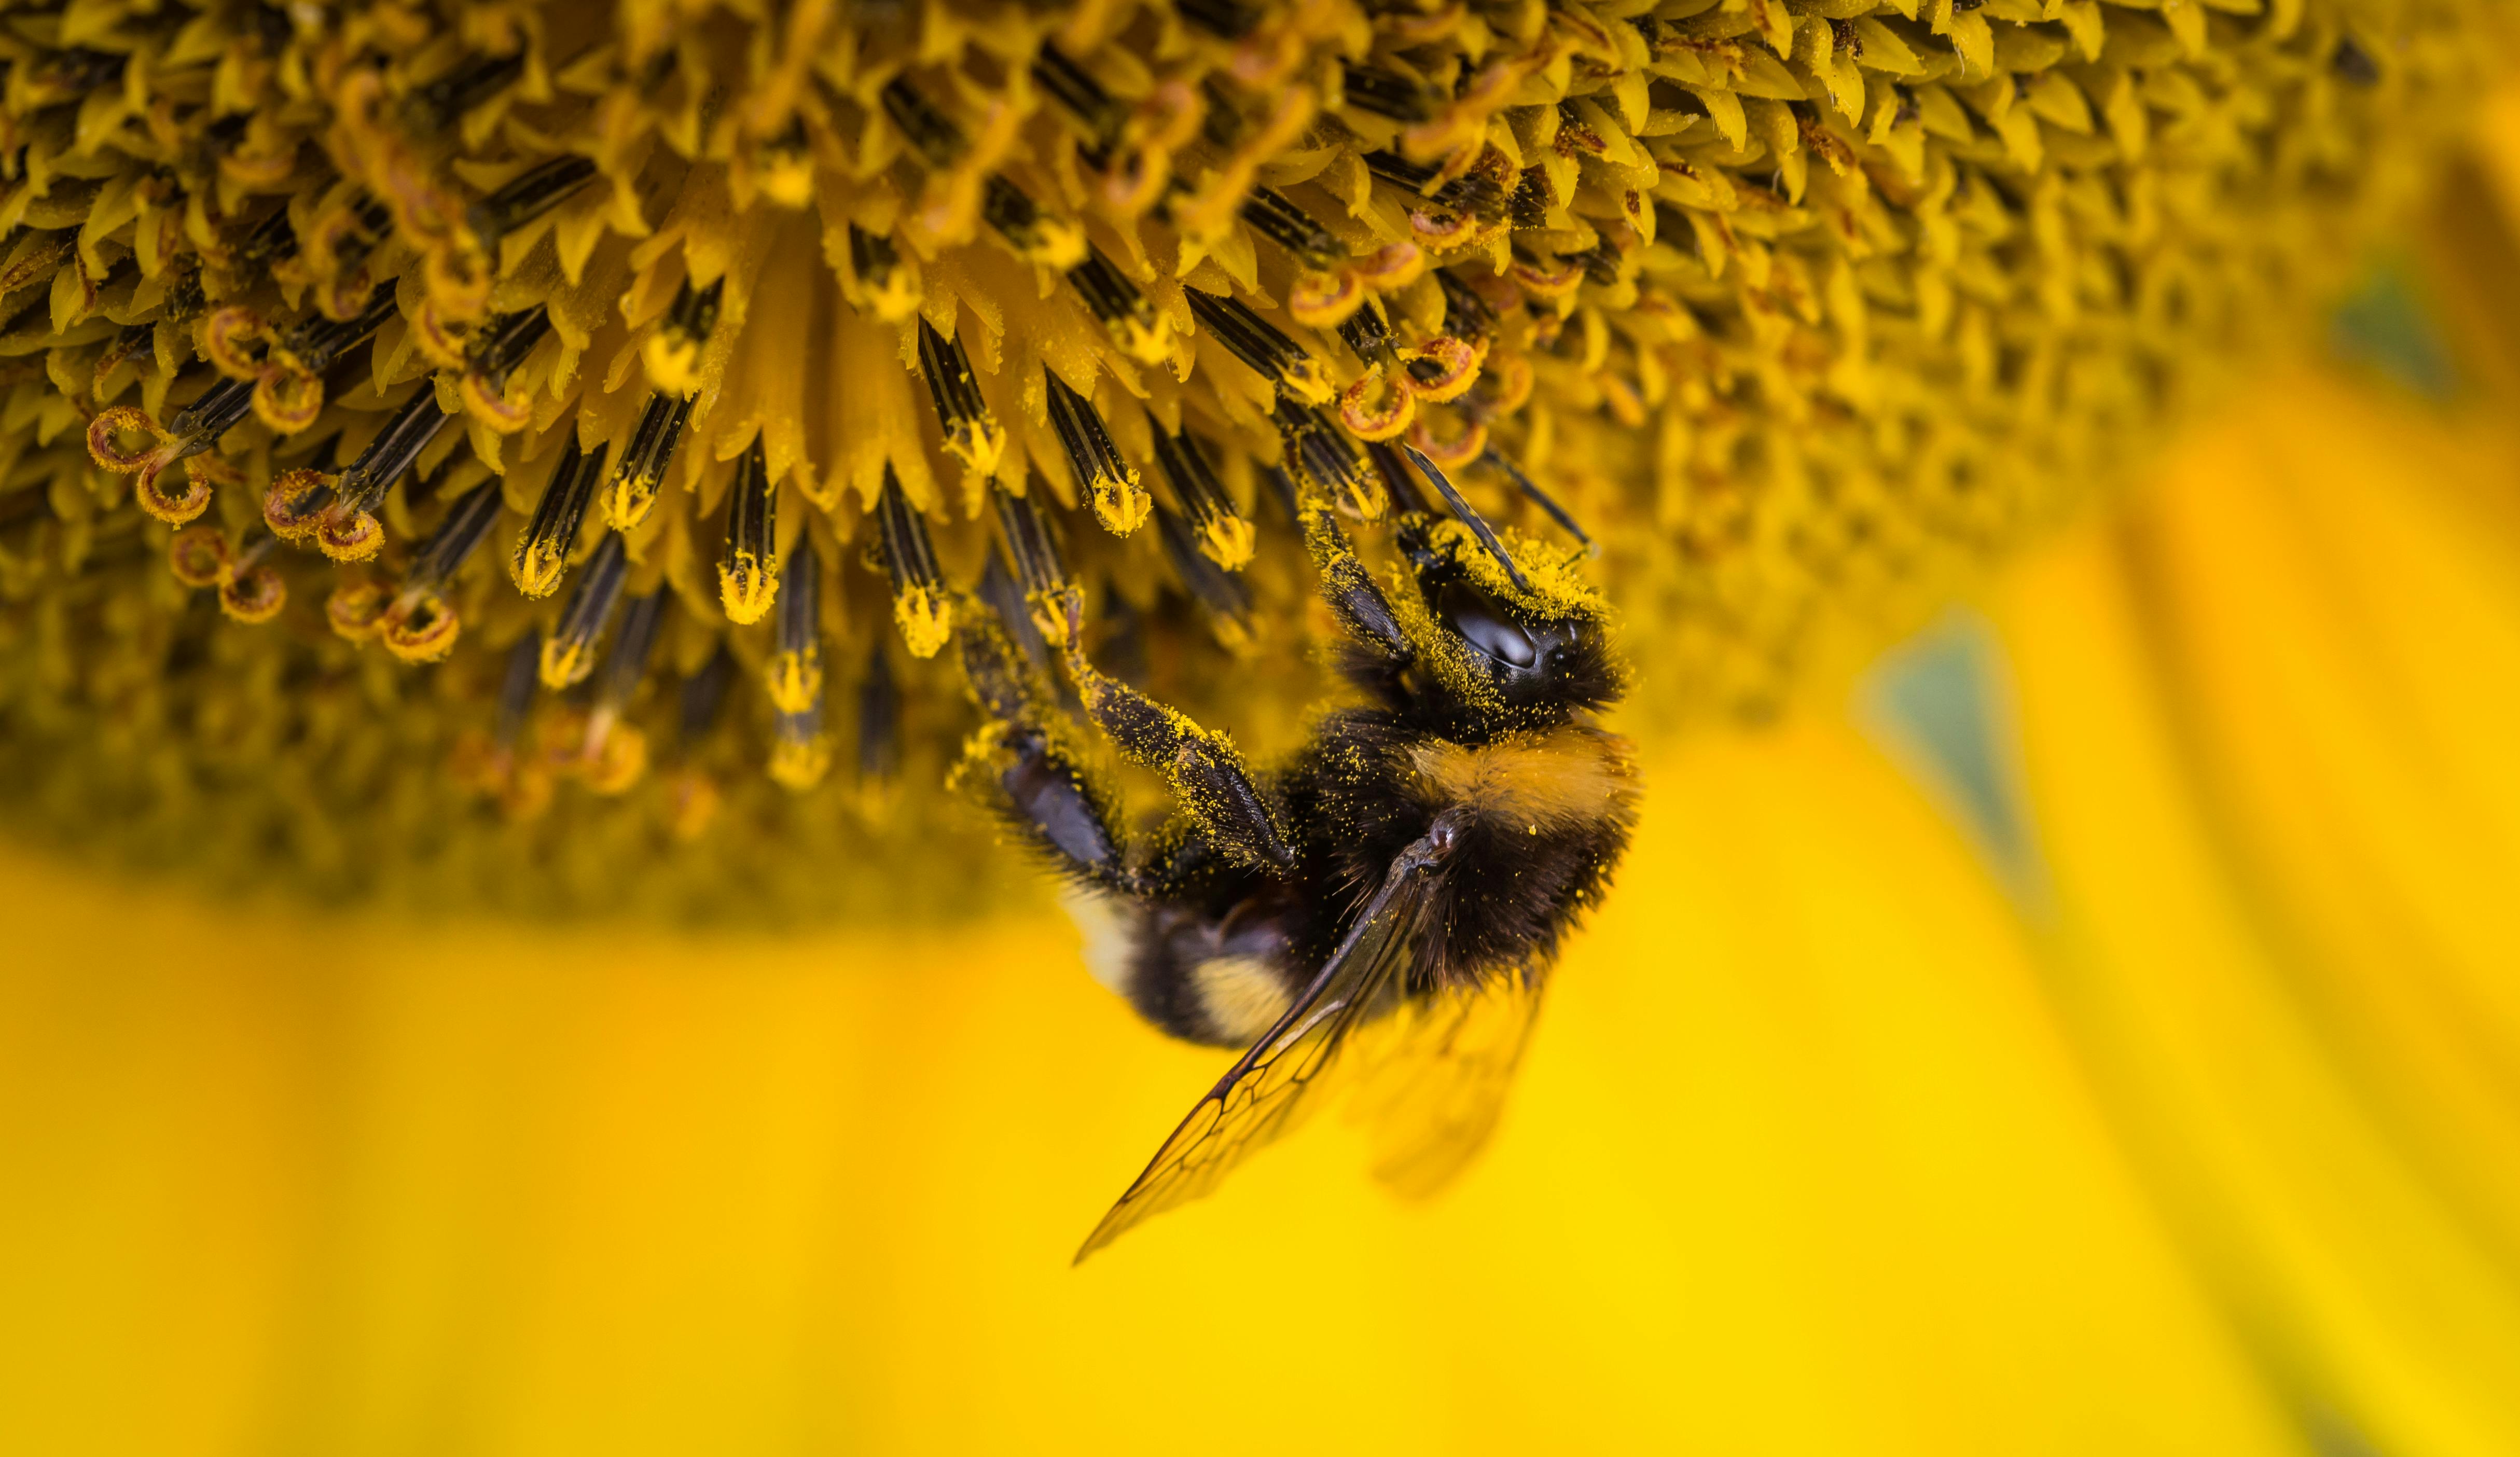 ミツバチの浅い焦点写真 無料の写真素材